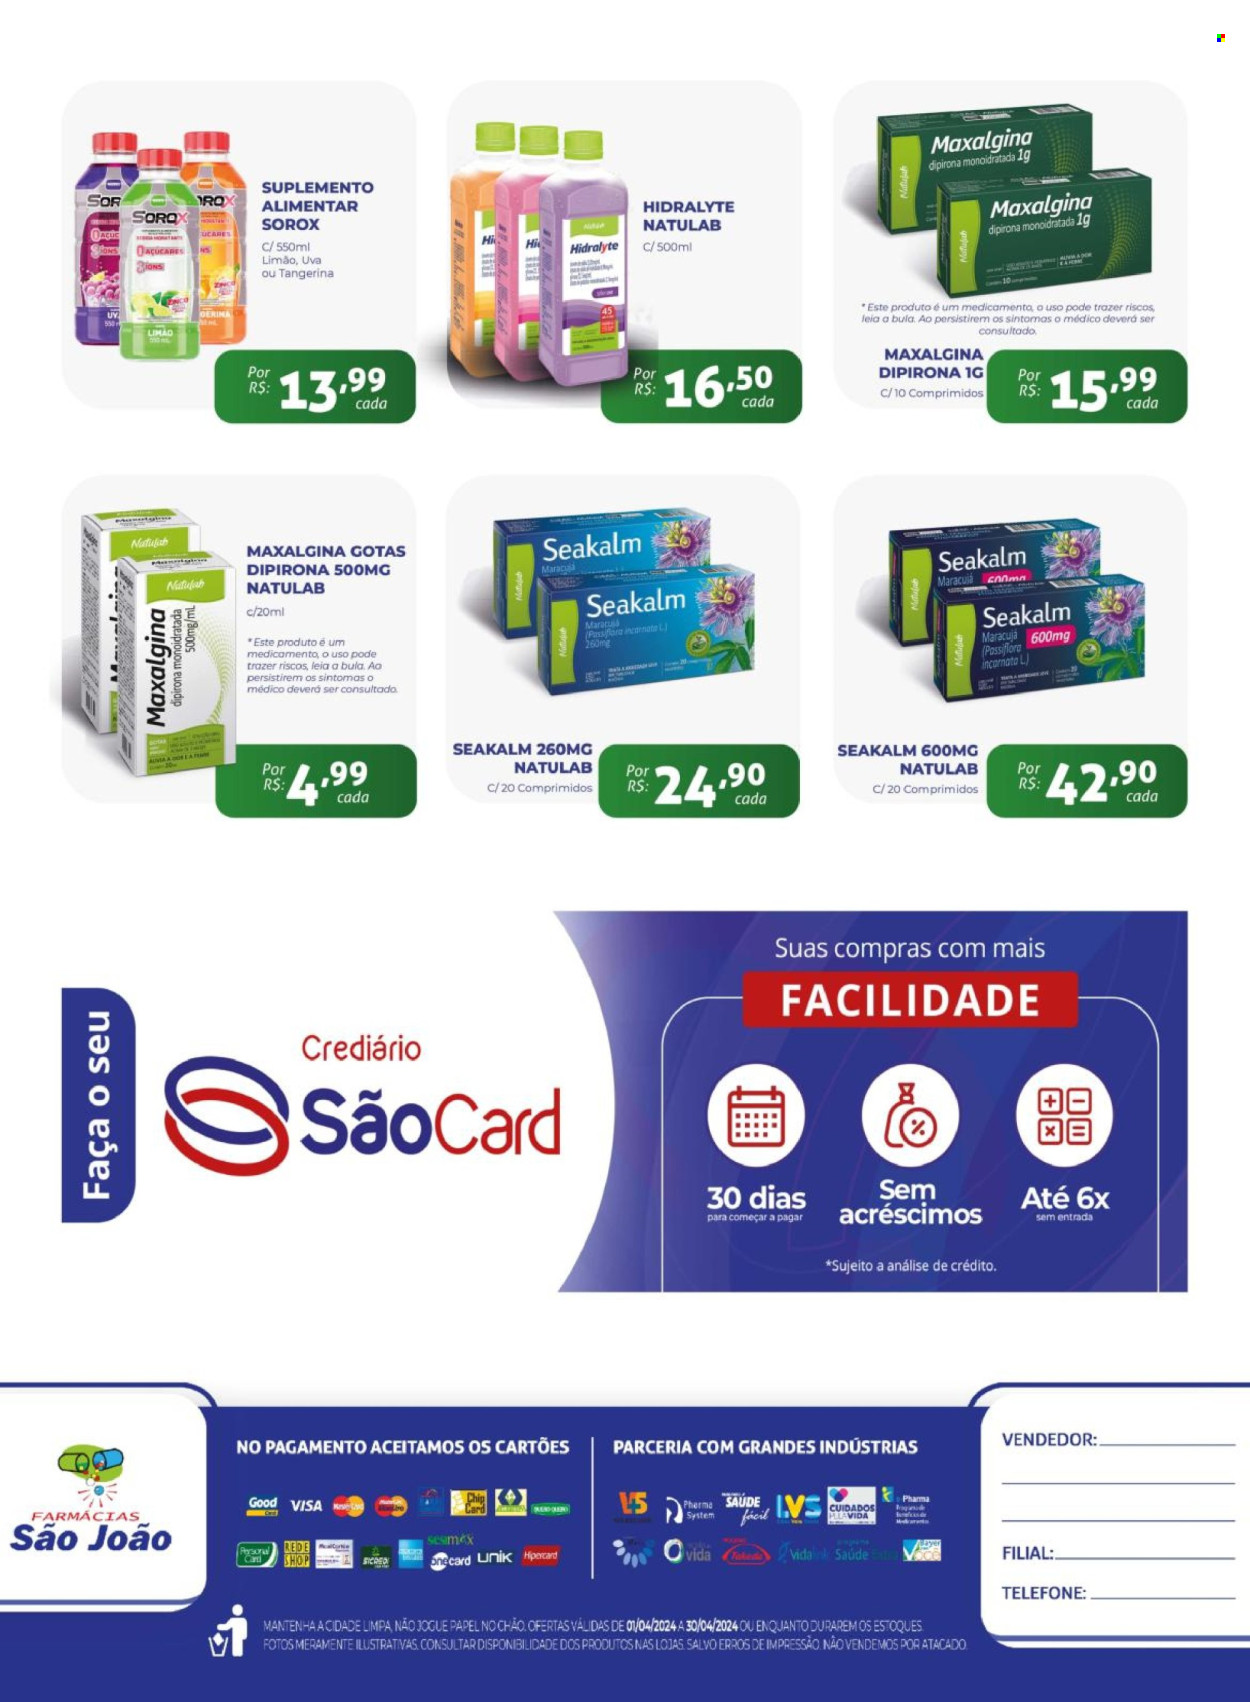 Encarte Farmácias São João  - 01.04.2024 - 30.04.2024.